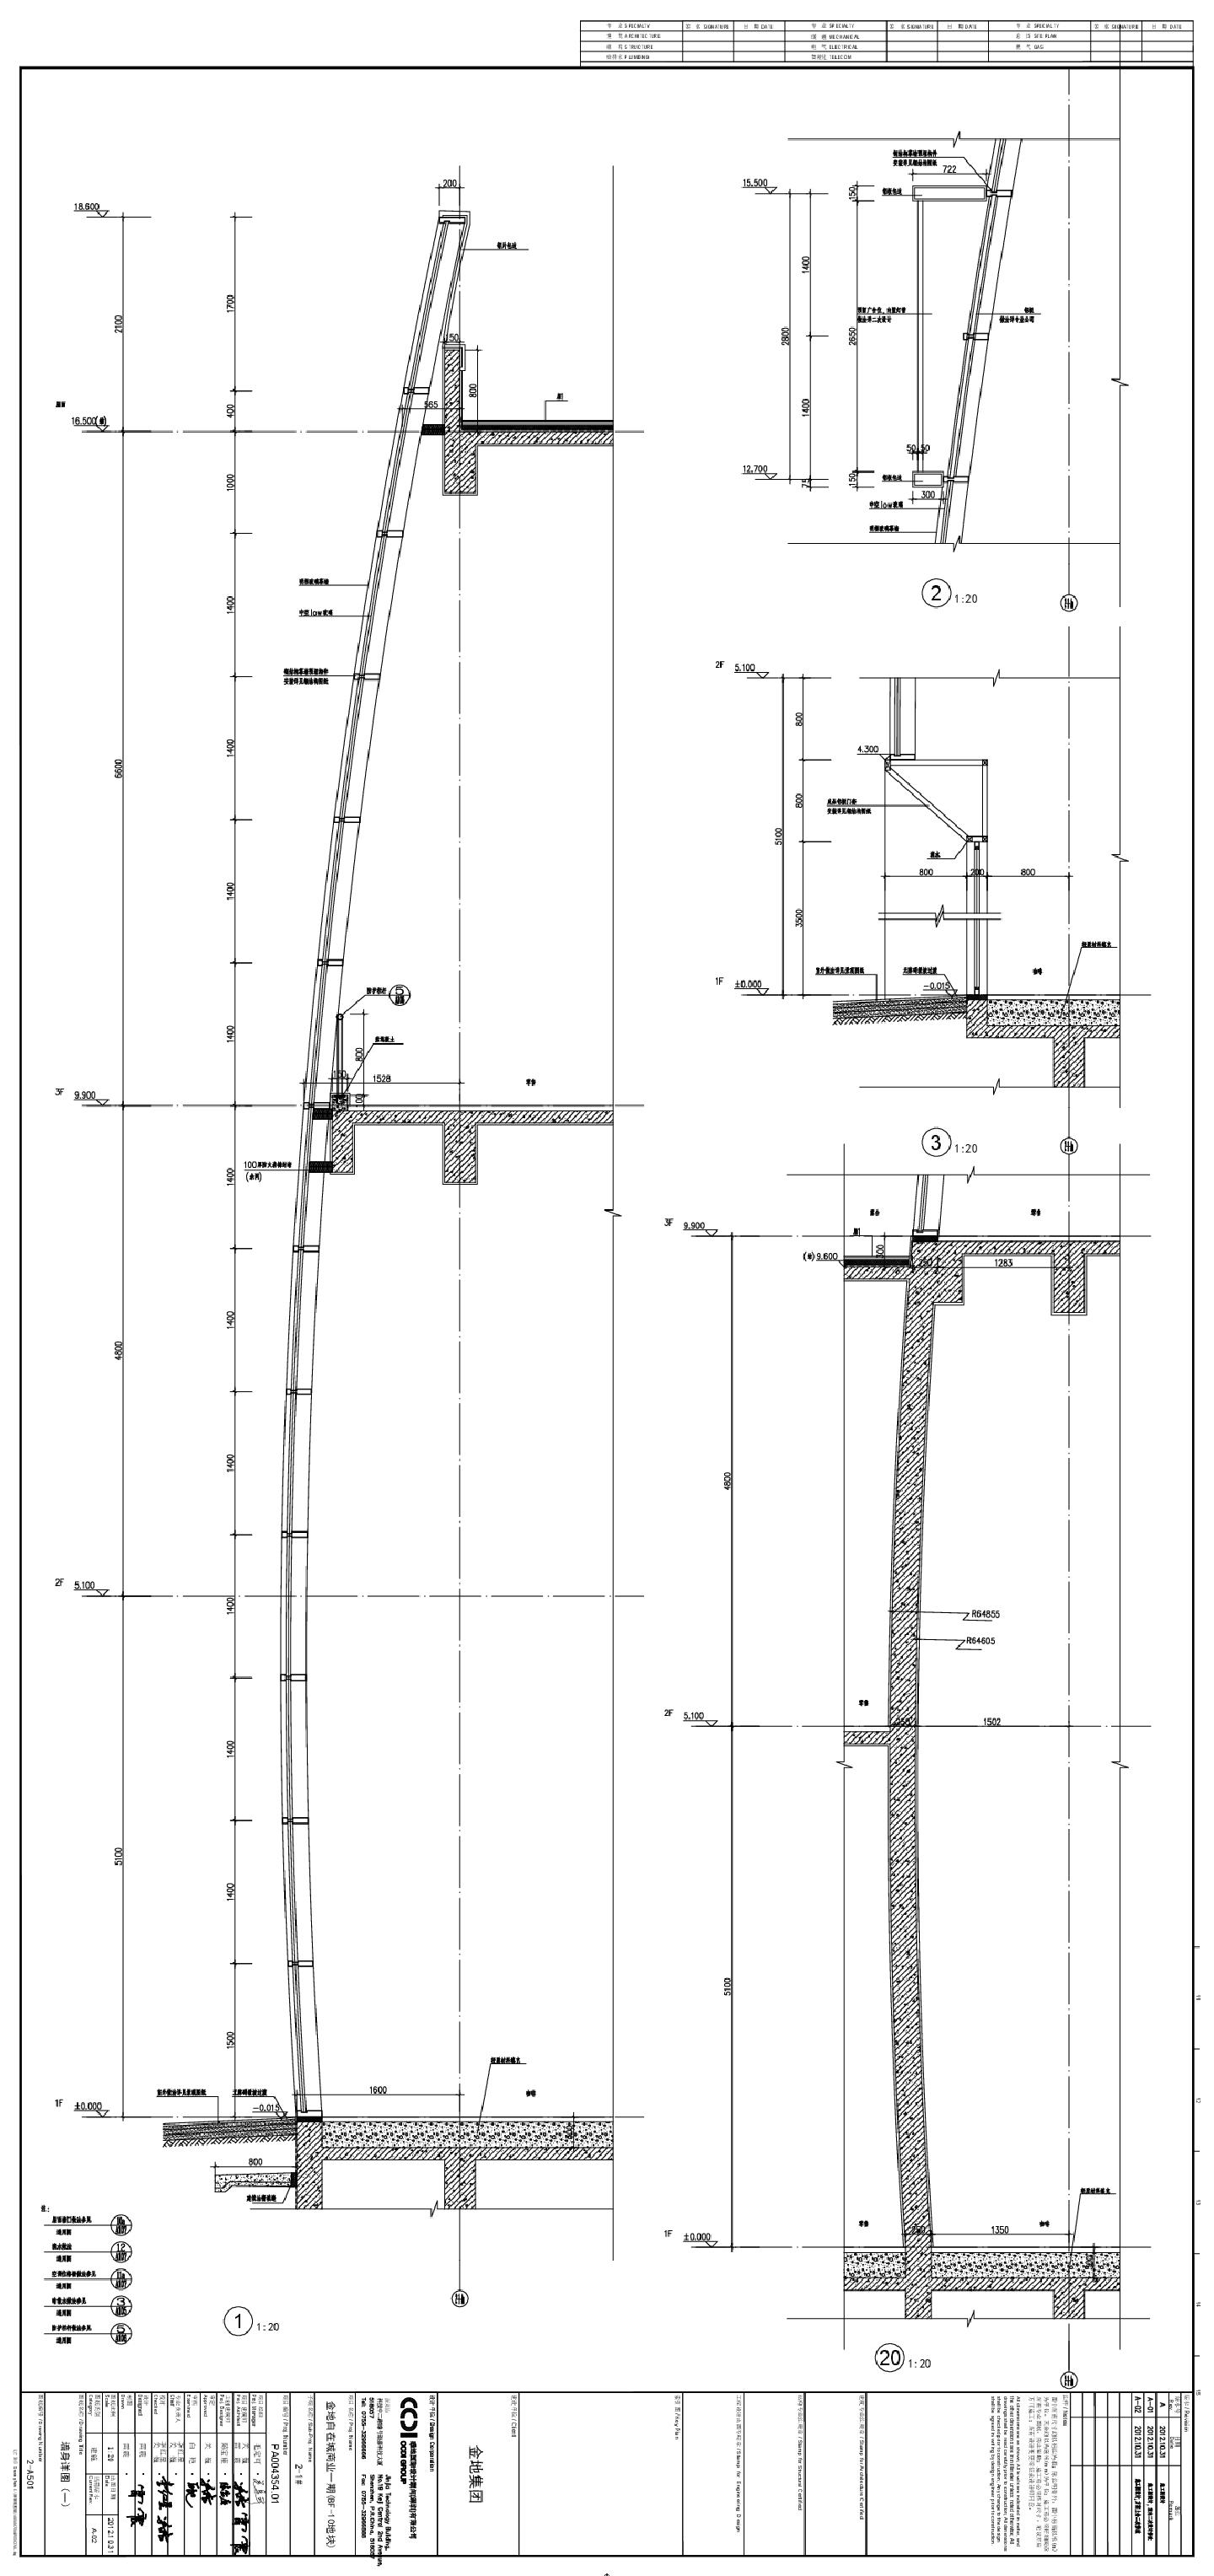 金地自在城商业一期(BF-10地块)2-1号-墙身节点详图CAD图